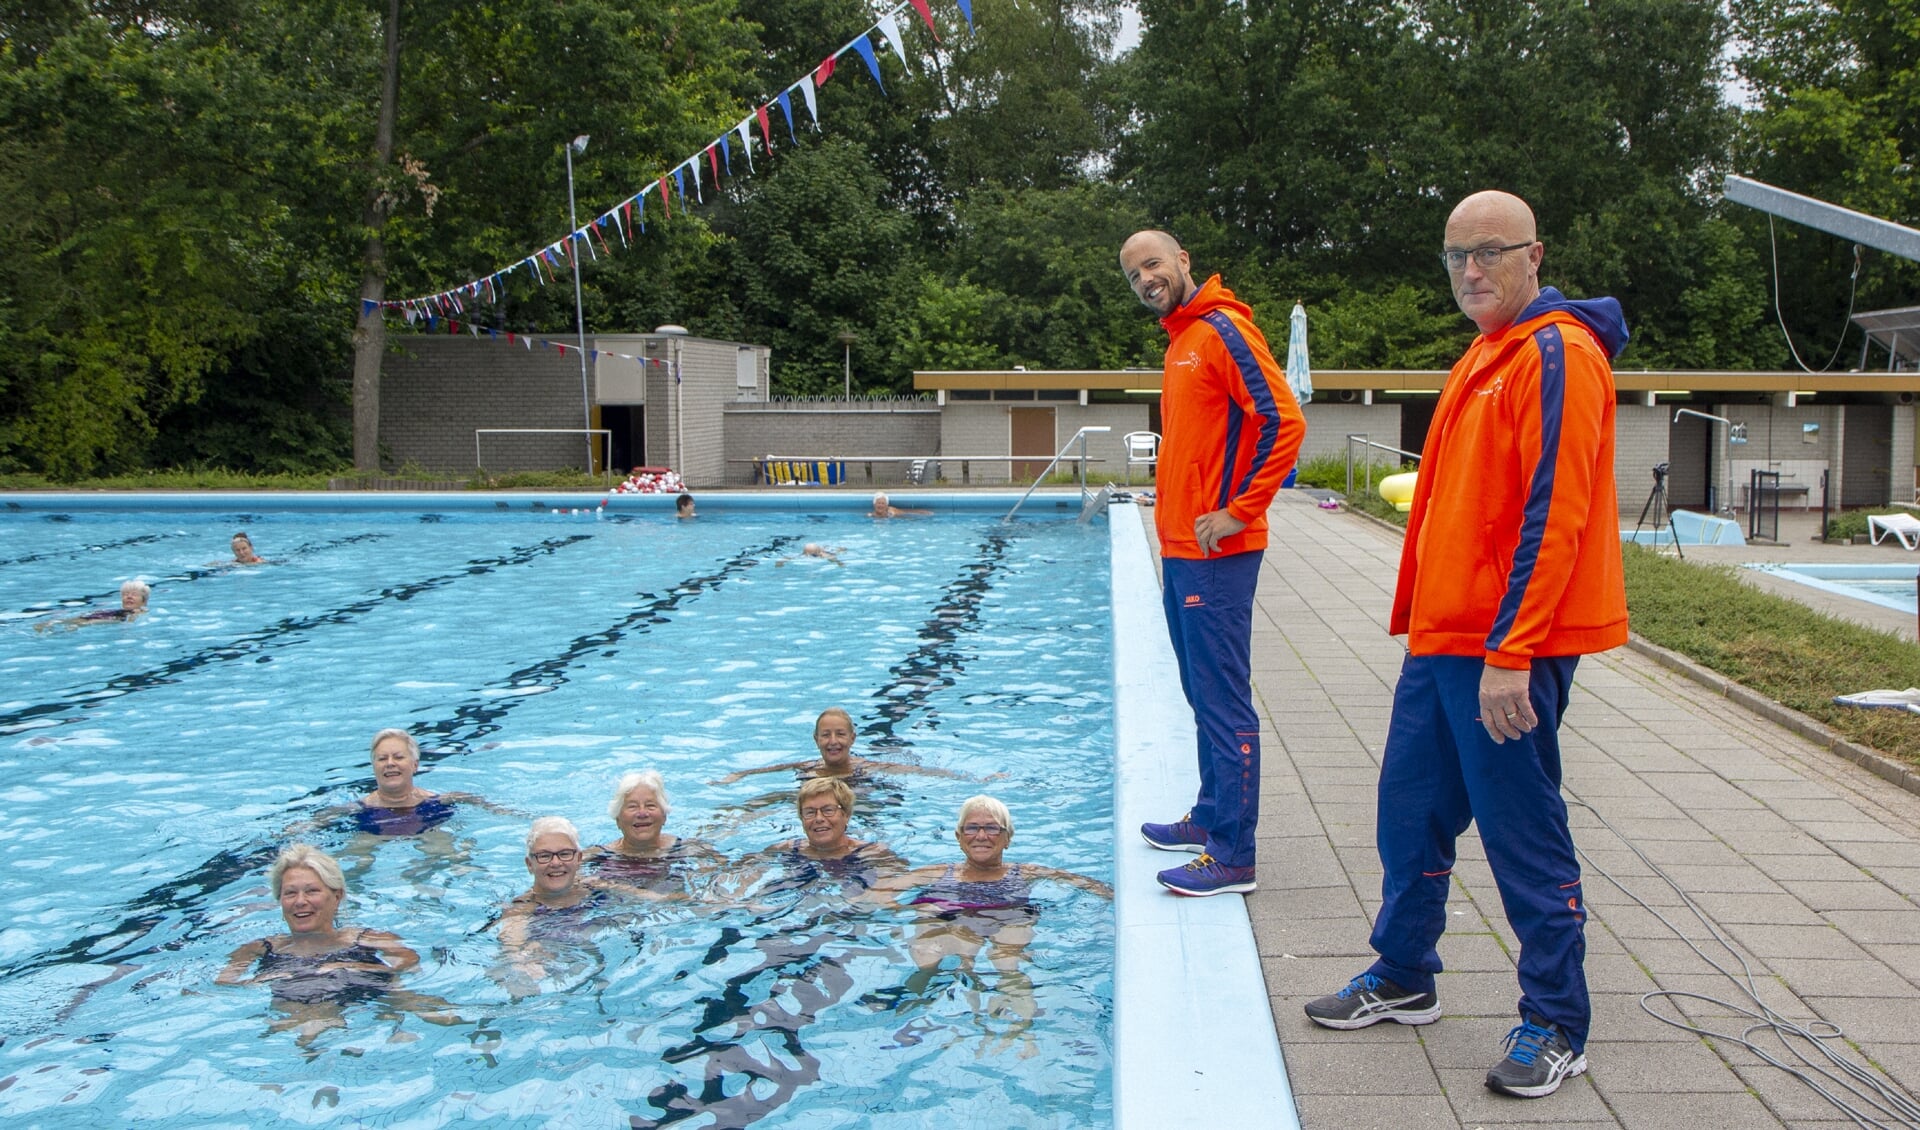 Het zwembad De Sawn Doarpen in Gytsjerk in juli 2019, met de badmeesters Ben Douwes (links) en Anton Nijboer. In het water enkele ouderen, die vitaal blijven dankzij regelmatig zwemmen.